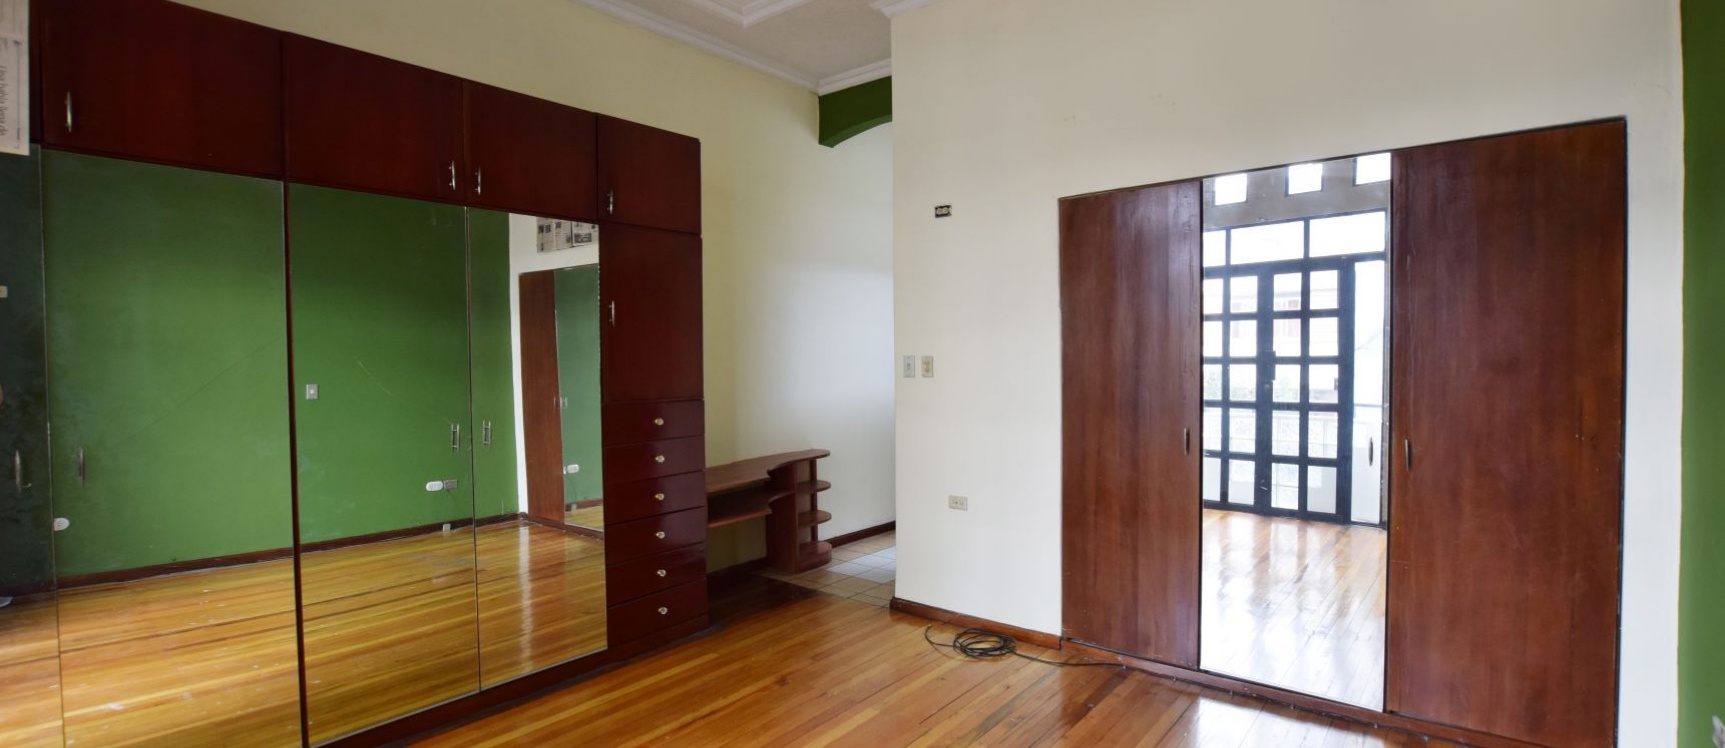 GeoBienes - Alquiler de departamento en el Centro de Guayaquil - Ecuador - Plusvalia Guayaquil Casas de venta y alquiler Inmobiliaria Ecuador